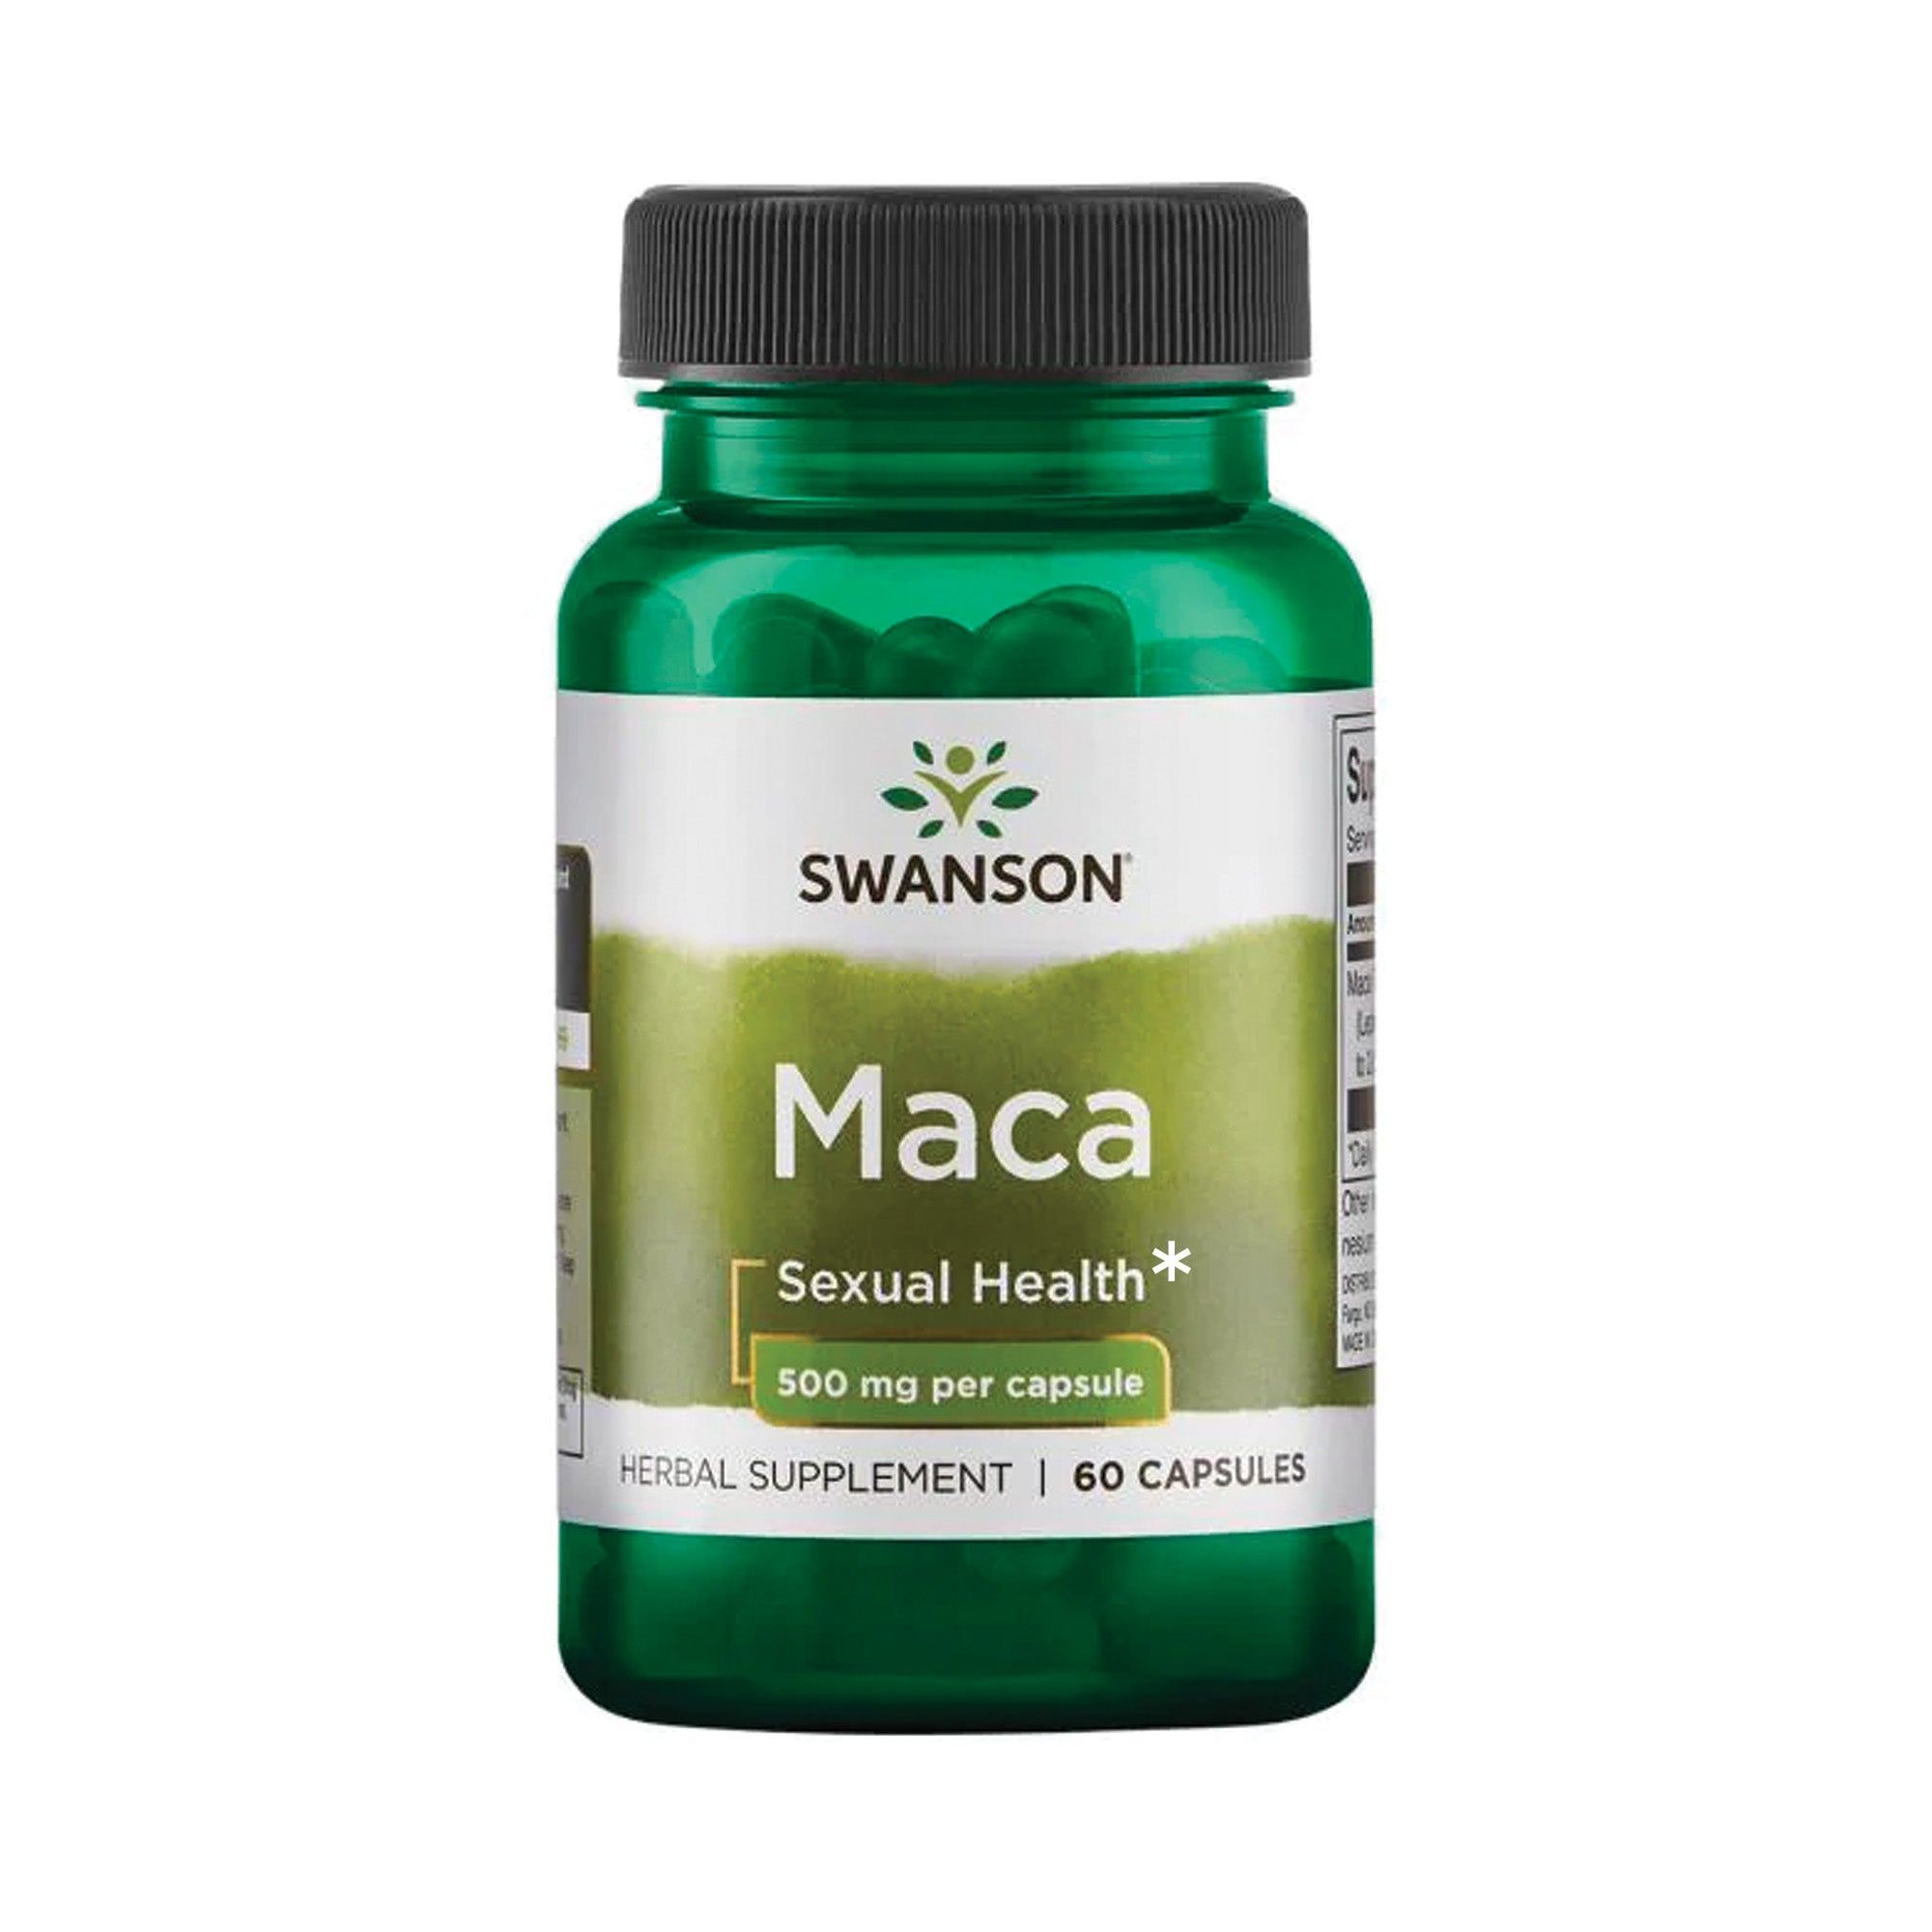 Swanson MAca supplement